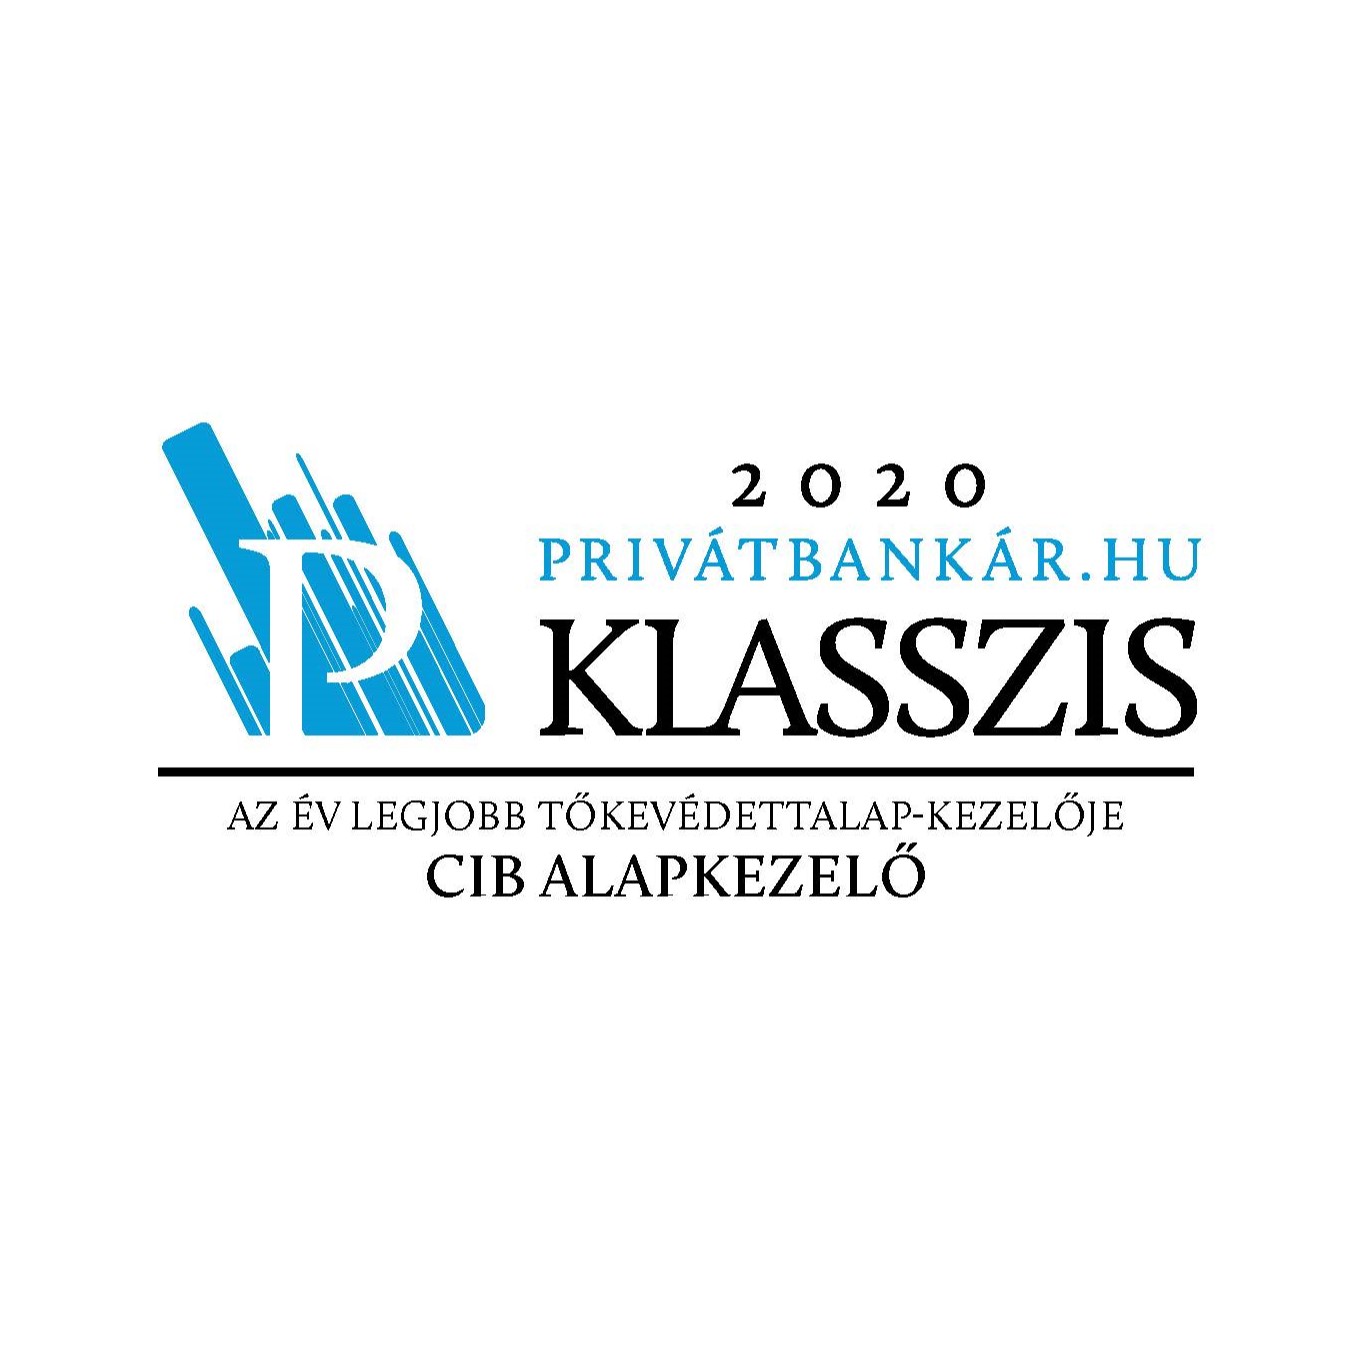 Az év legjobb tőkevédett alapkezelője - Privátbankár.hu klasszis 2020 díj